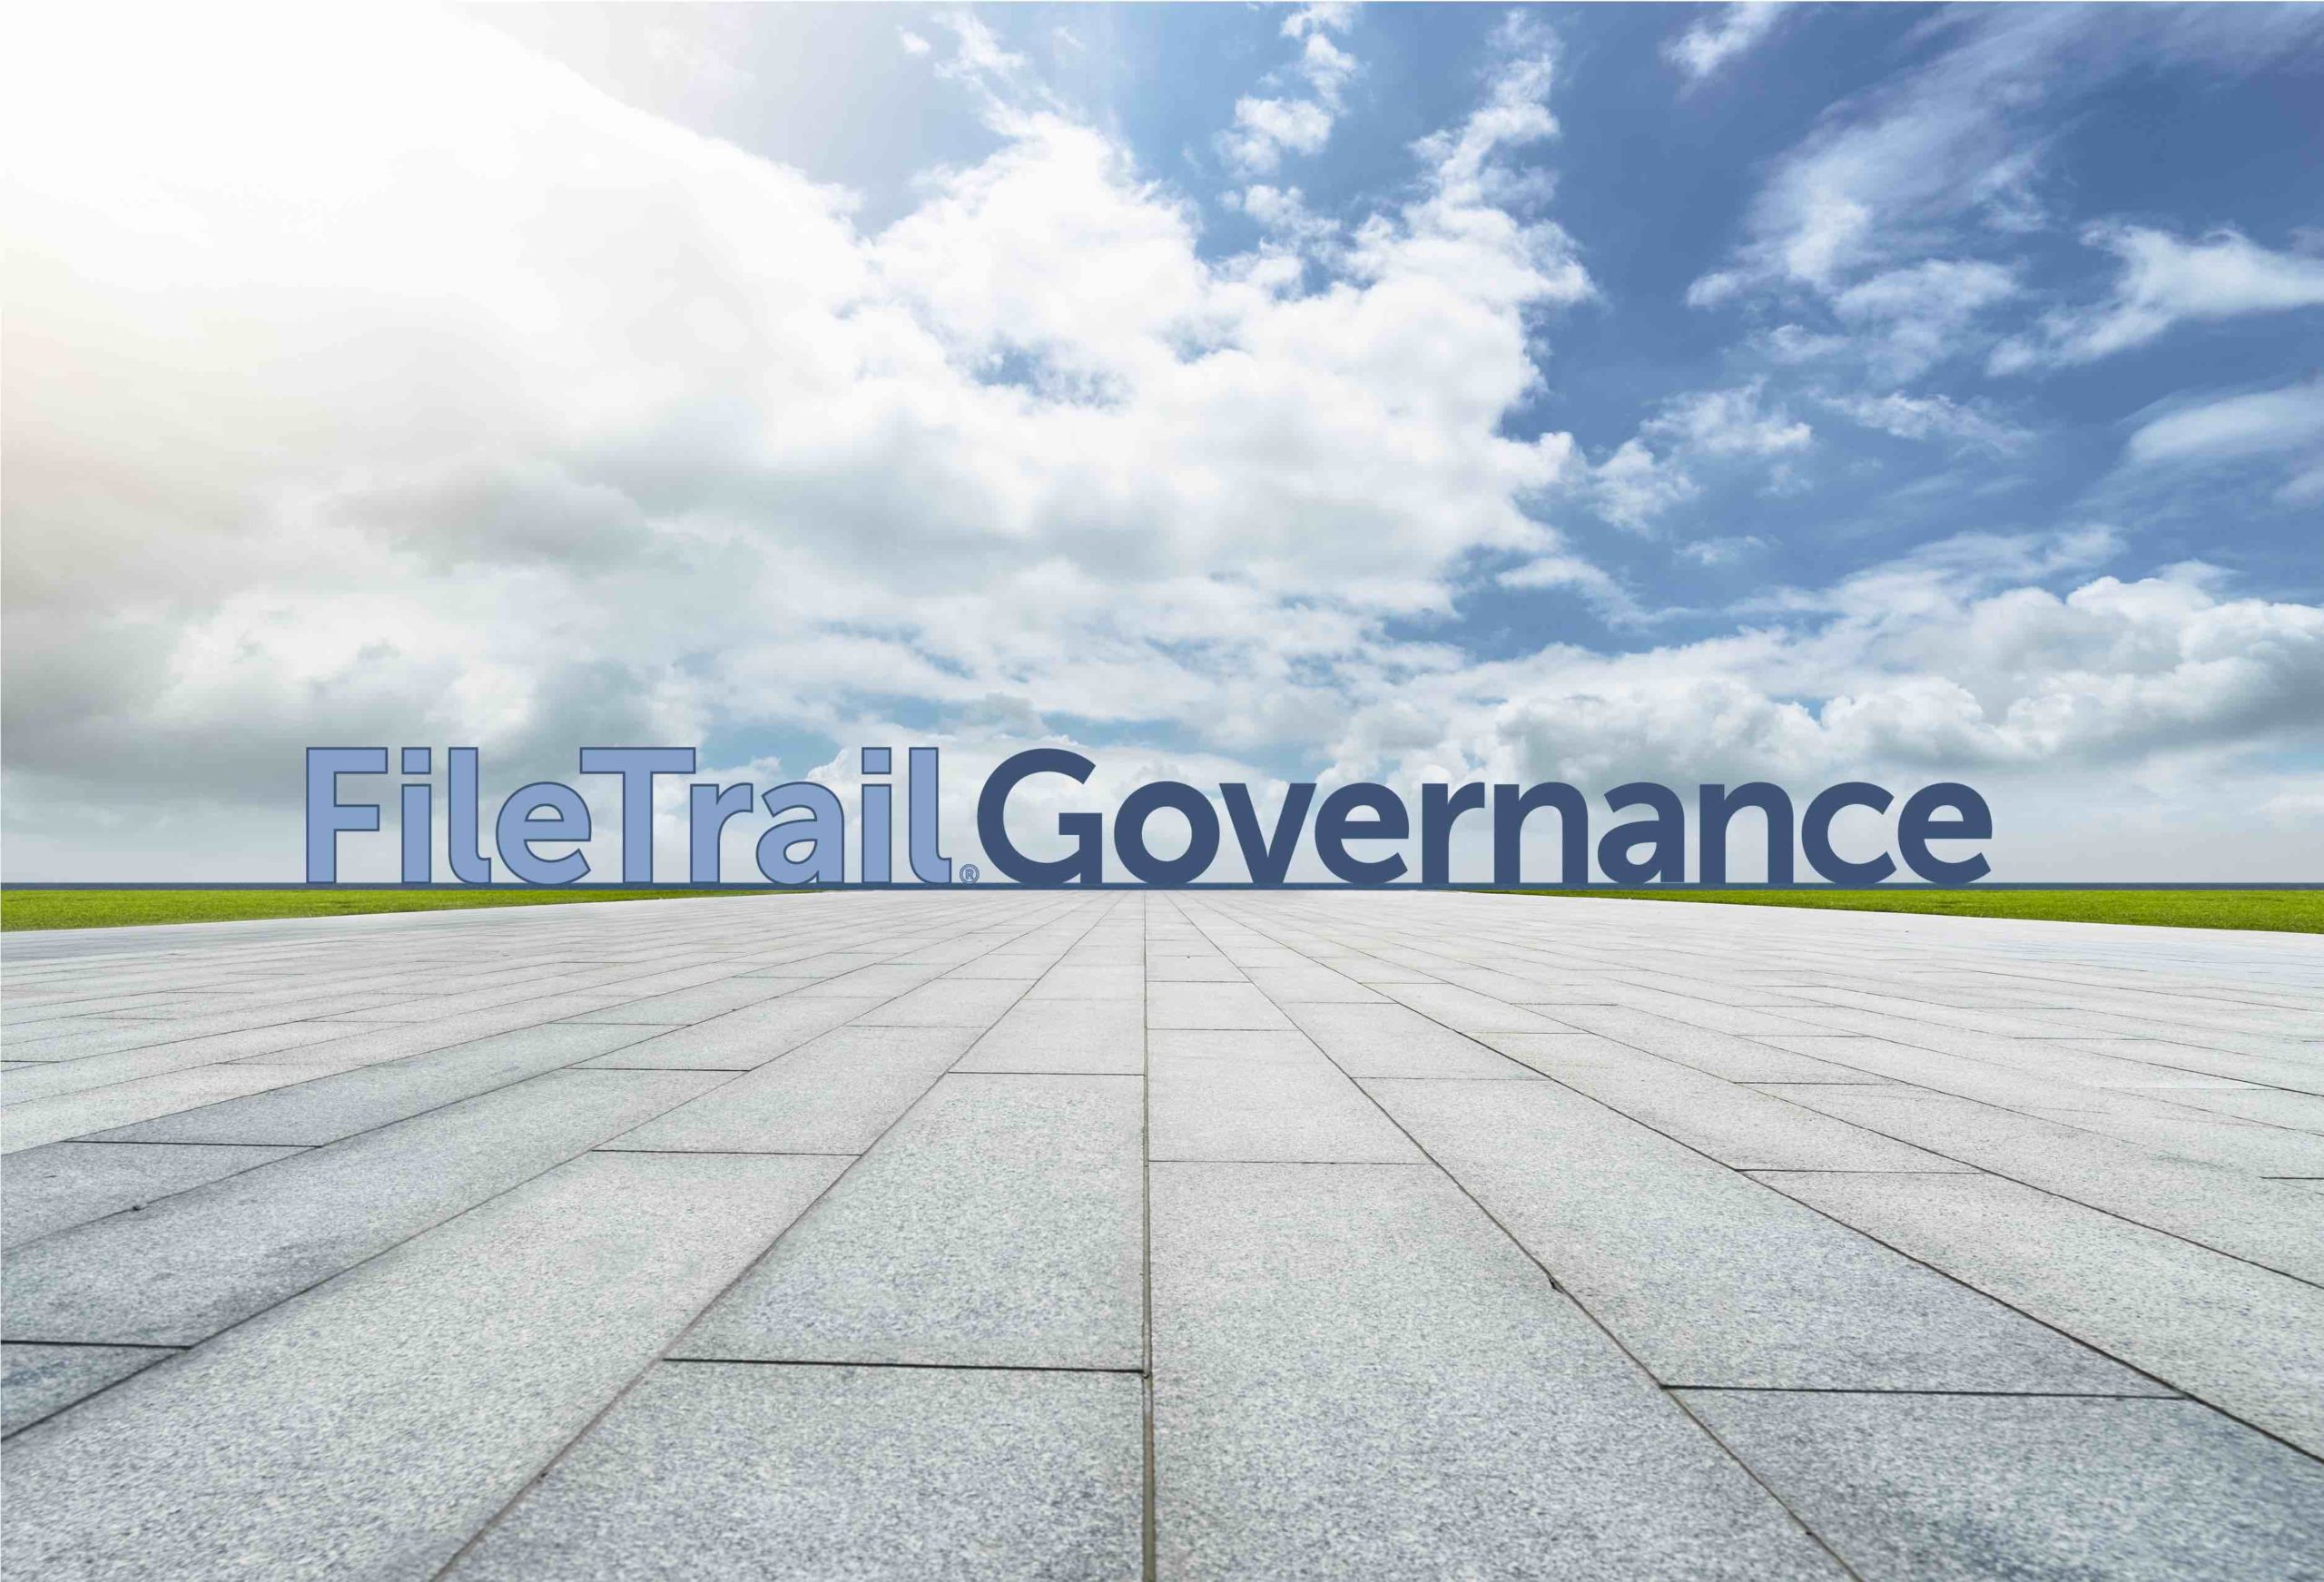 New Information Governance Platform